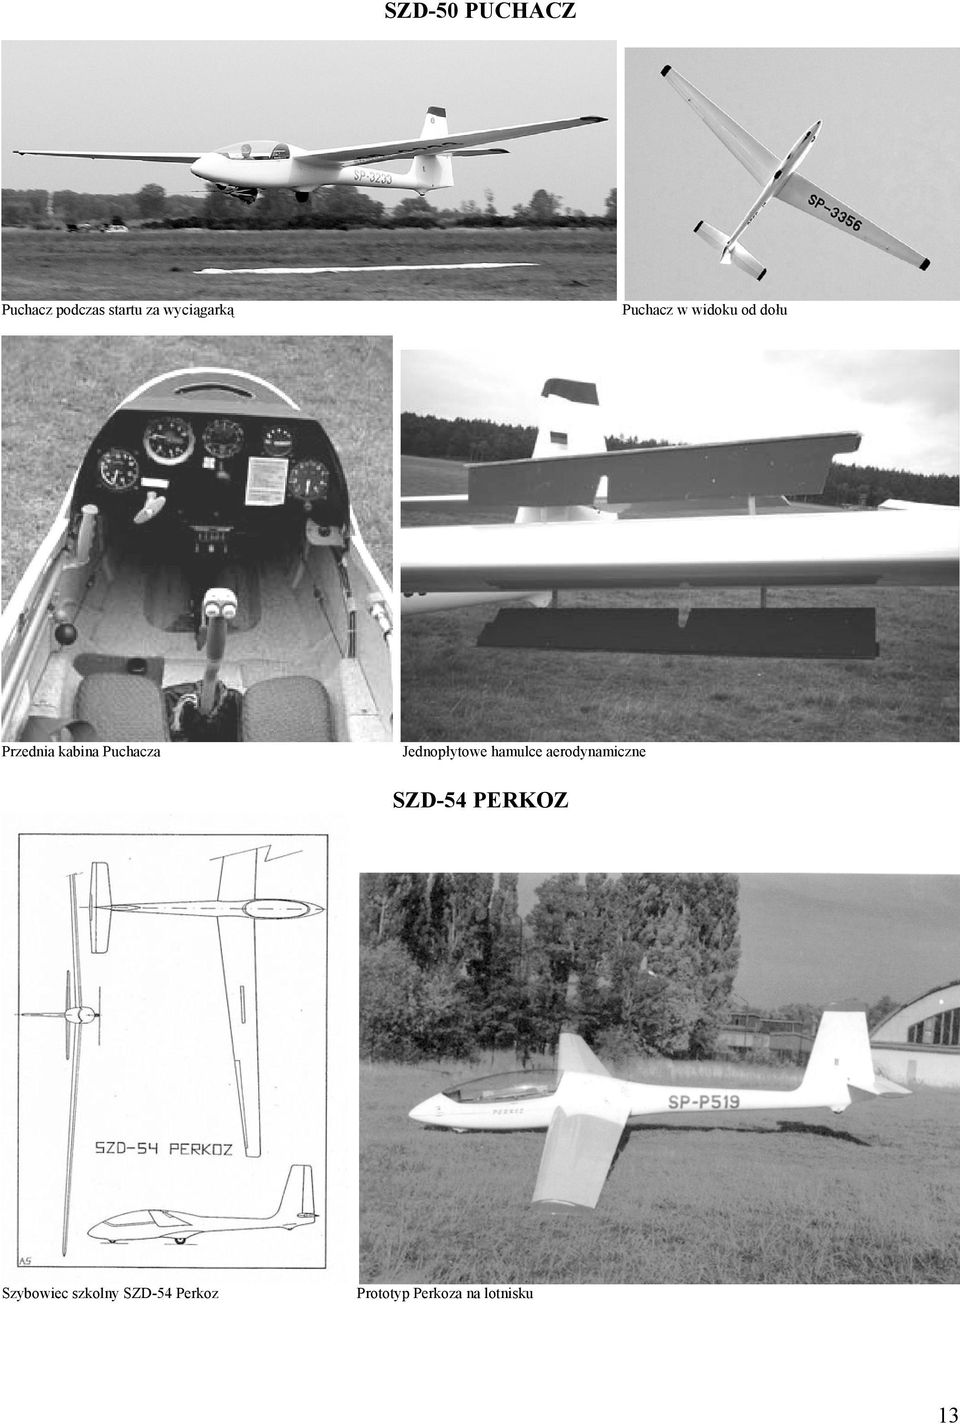 Jednopłytowe hamulce aerodynamiczne SZD-54 PERKOZ